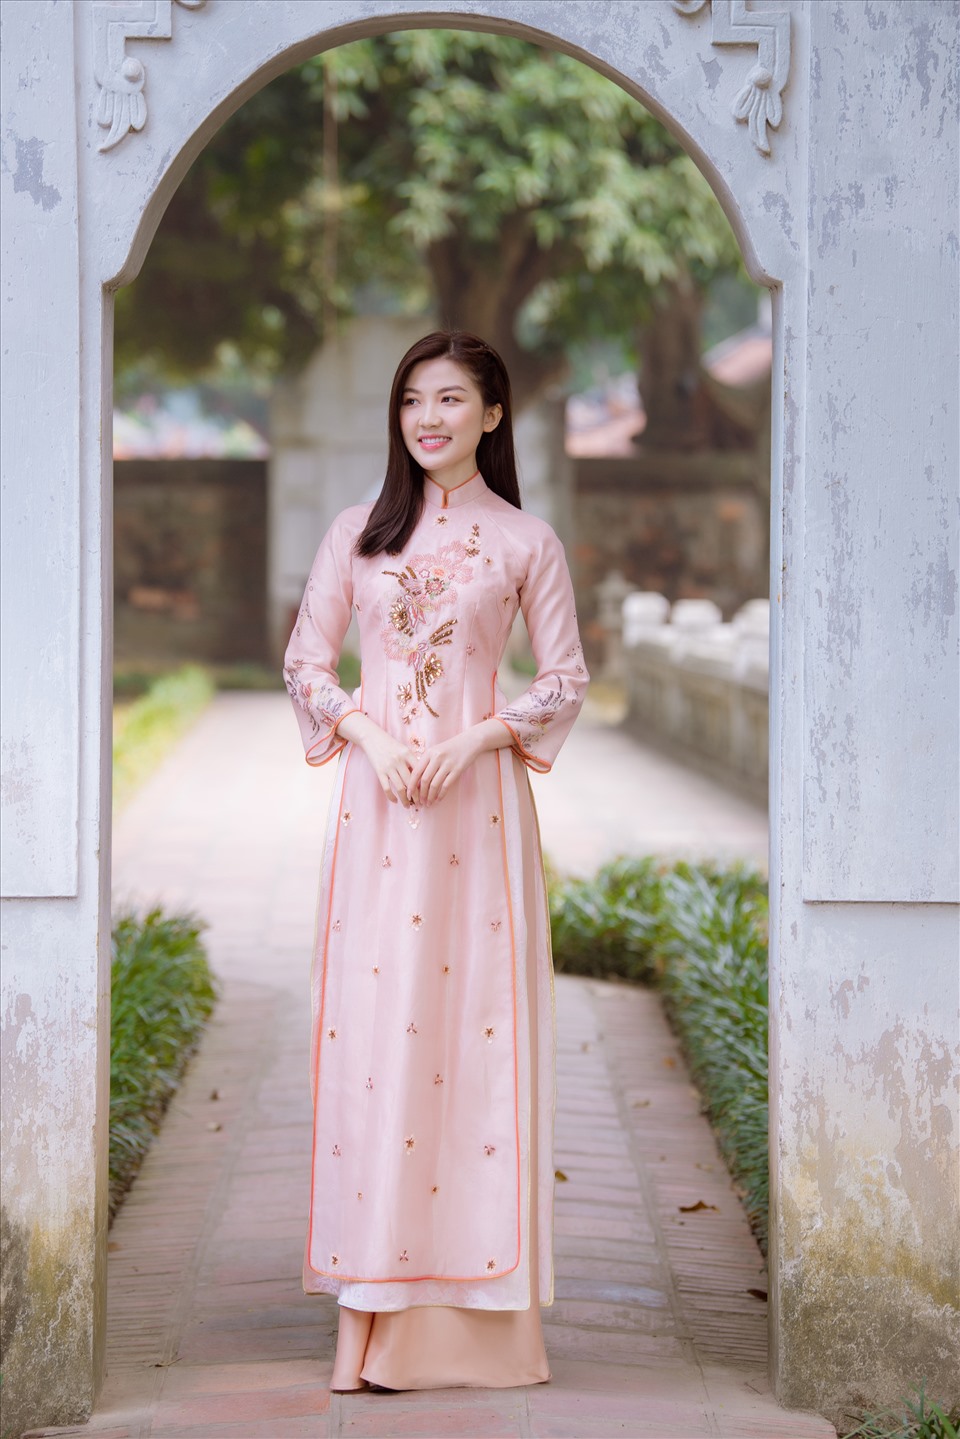 Lương Thanh đã không quên đánh dấu năm 2020 bằng bộ hình chụp với áo dài truyền thống của người Việt Nam. Ảnh: Vũ Toàn.